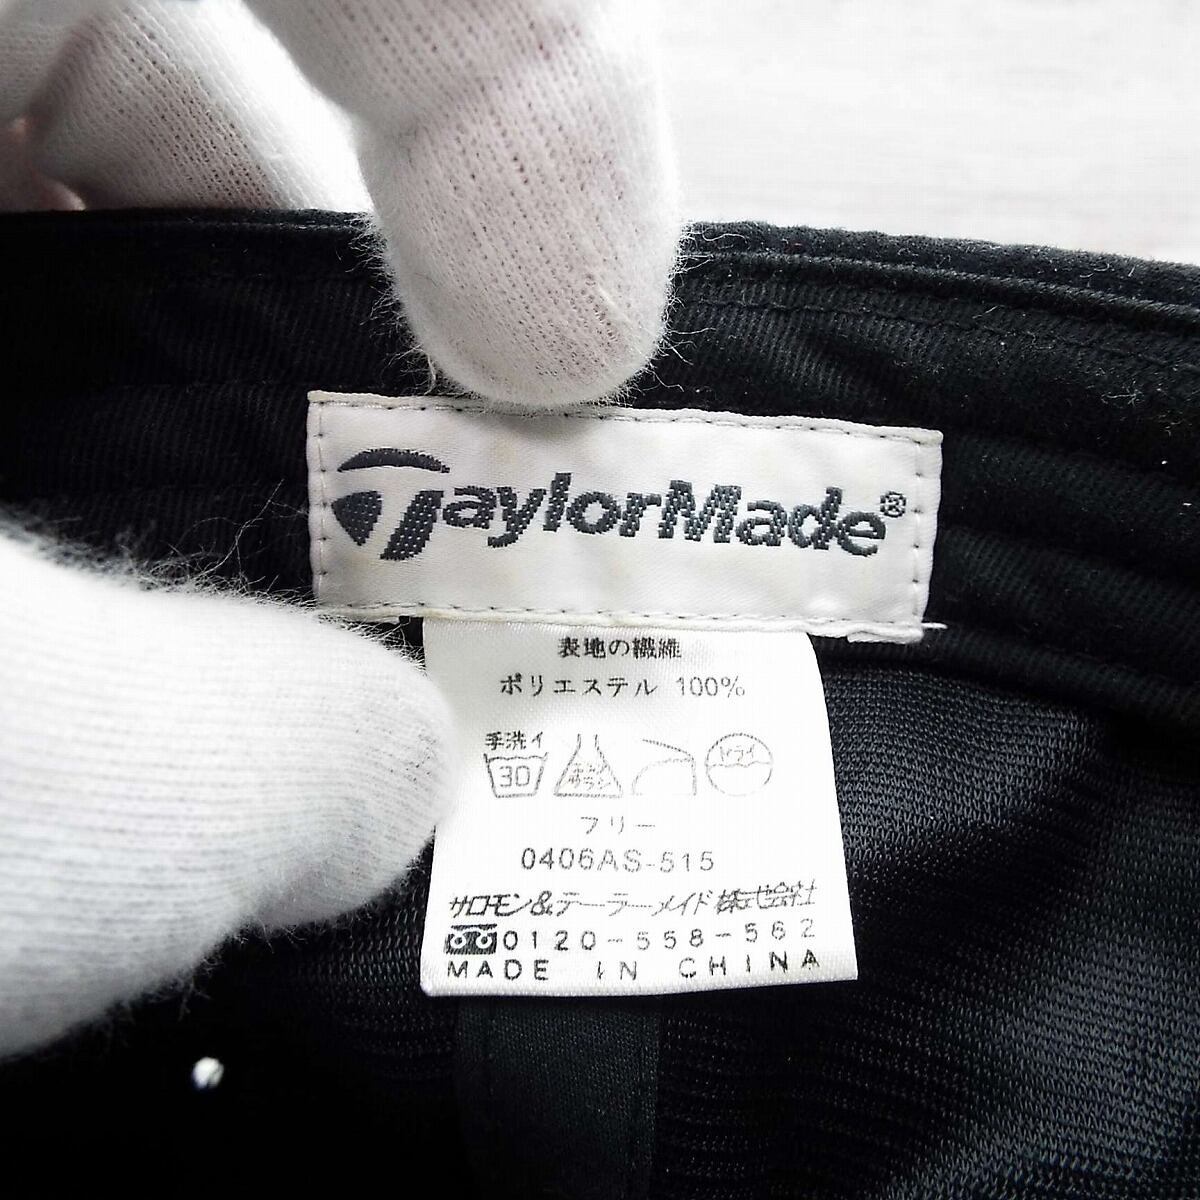 Taylor Made Taylor meido под замшу вышивка Logo колпак шляпа черный чёрный свободный размер голова вокруг :53~59cm одежда для гольфа мужской б/у одежда 